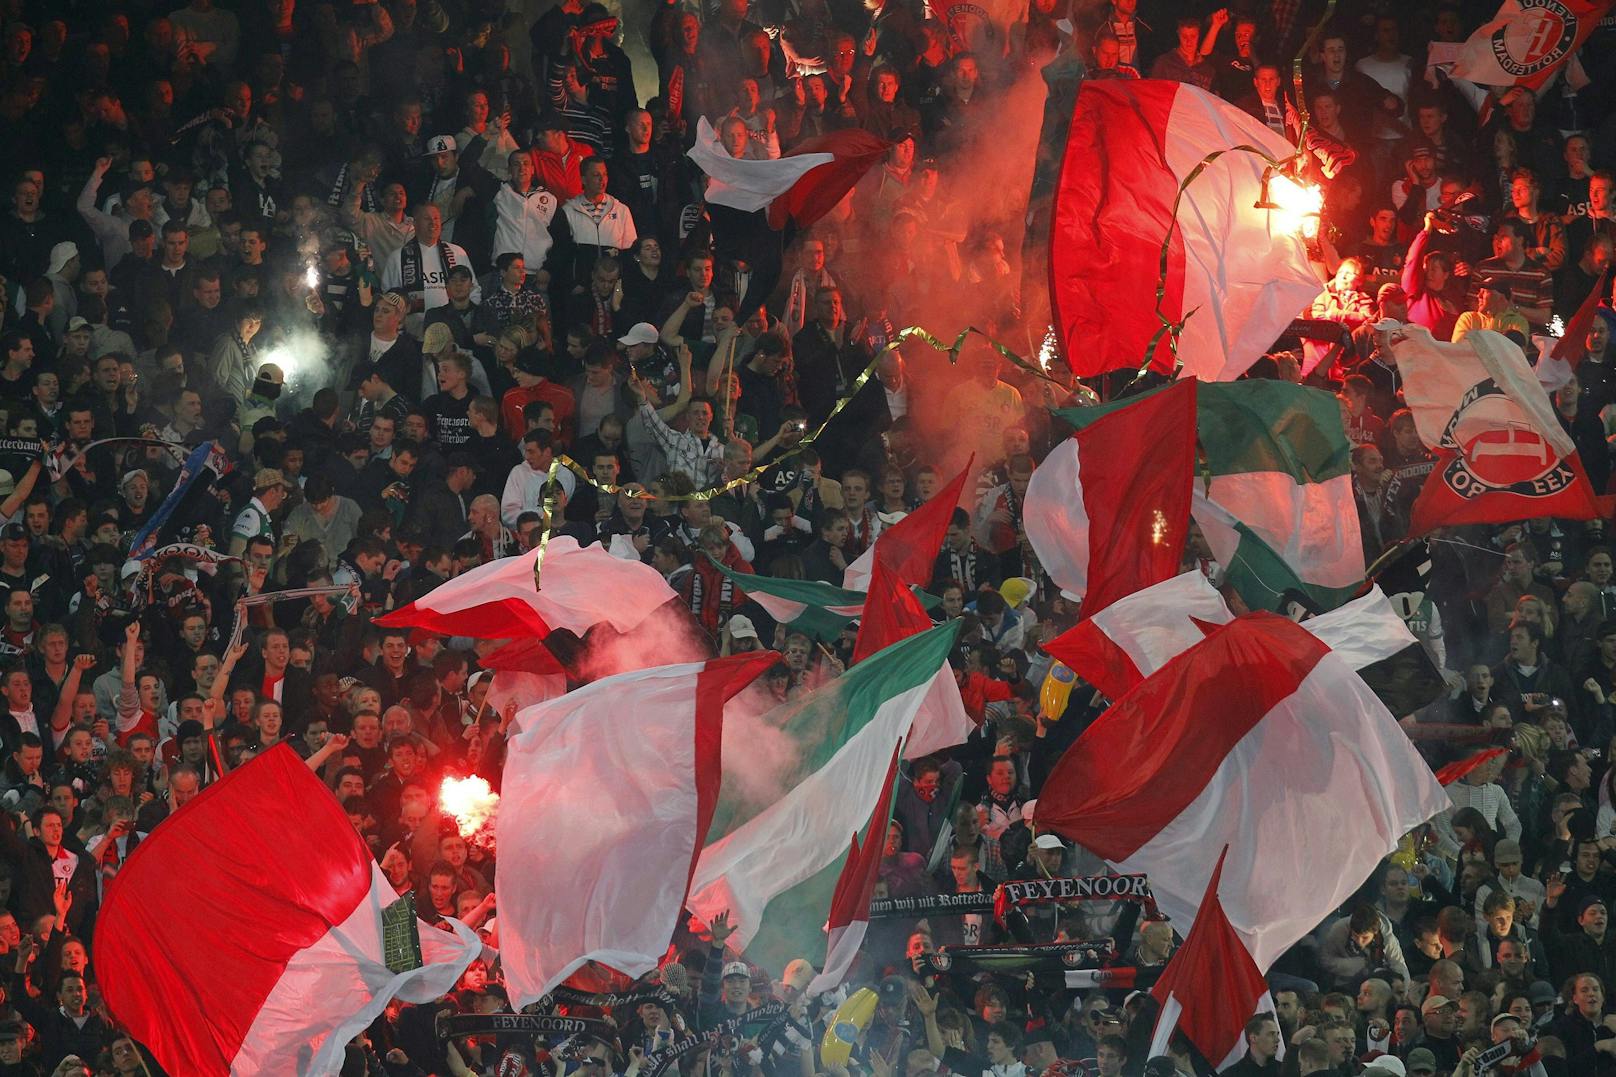 Die Fans von Feyenoord sind zu weit gegangen